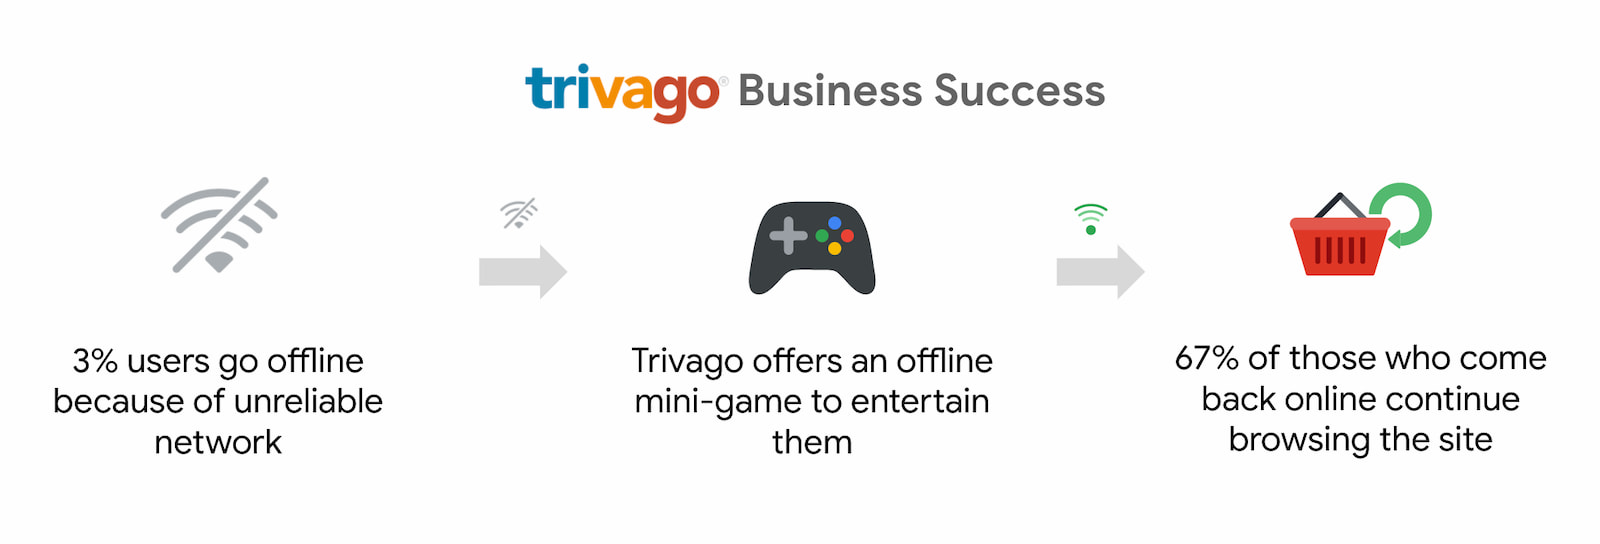 Trivago observó un aumento del 67% en los usuarios que volvieron a en línea y siguieron navegando.